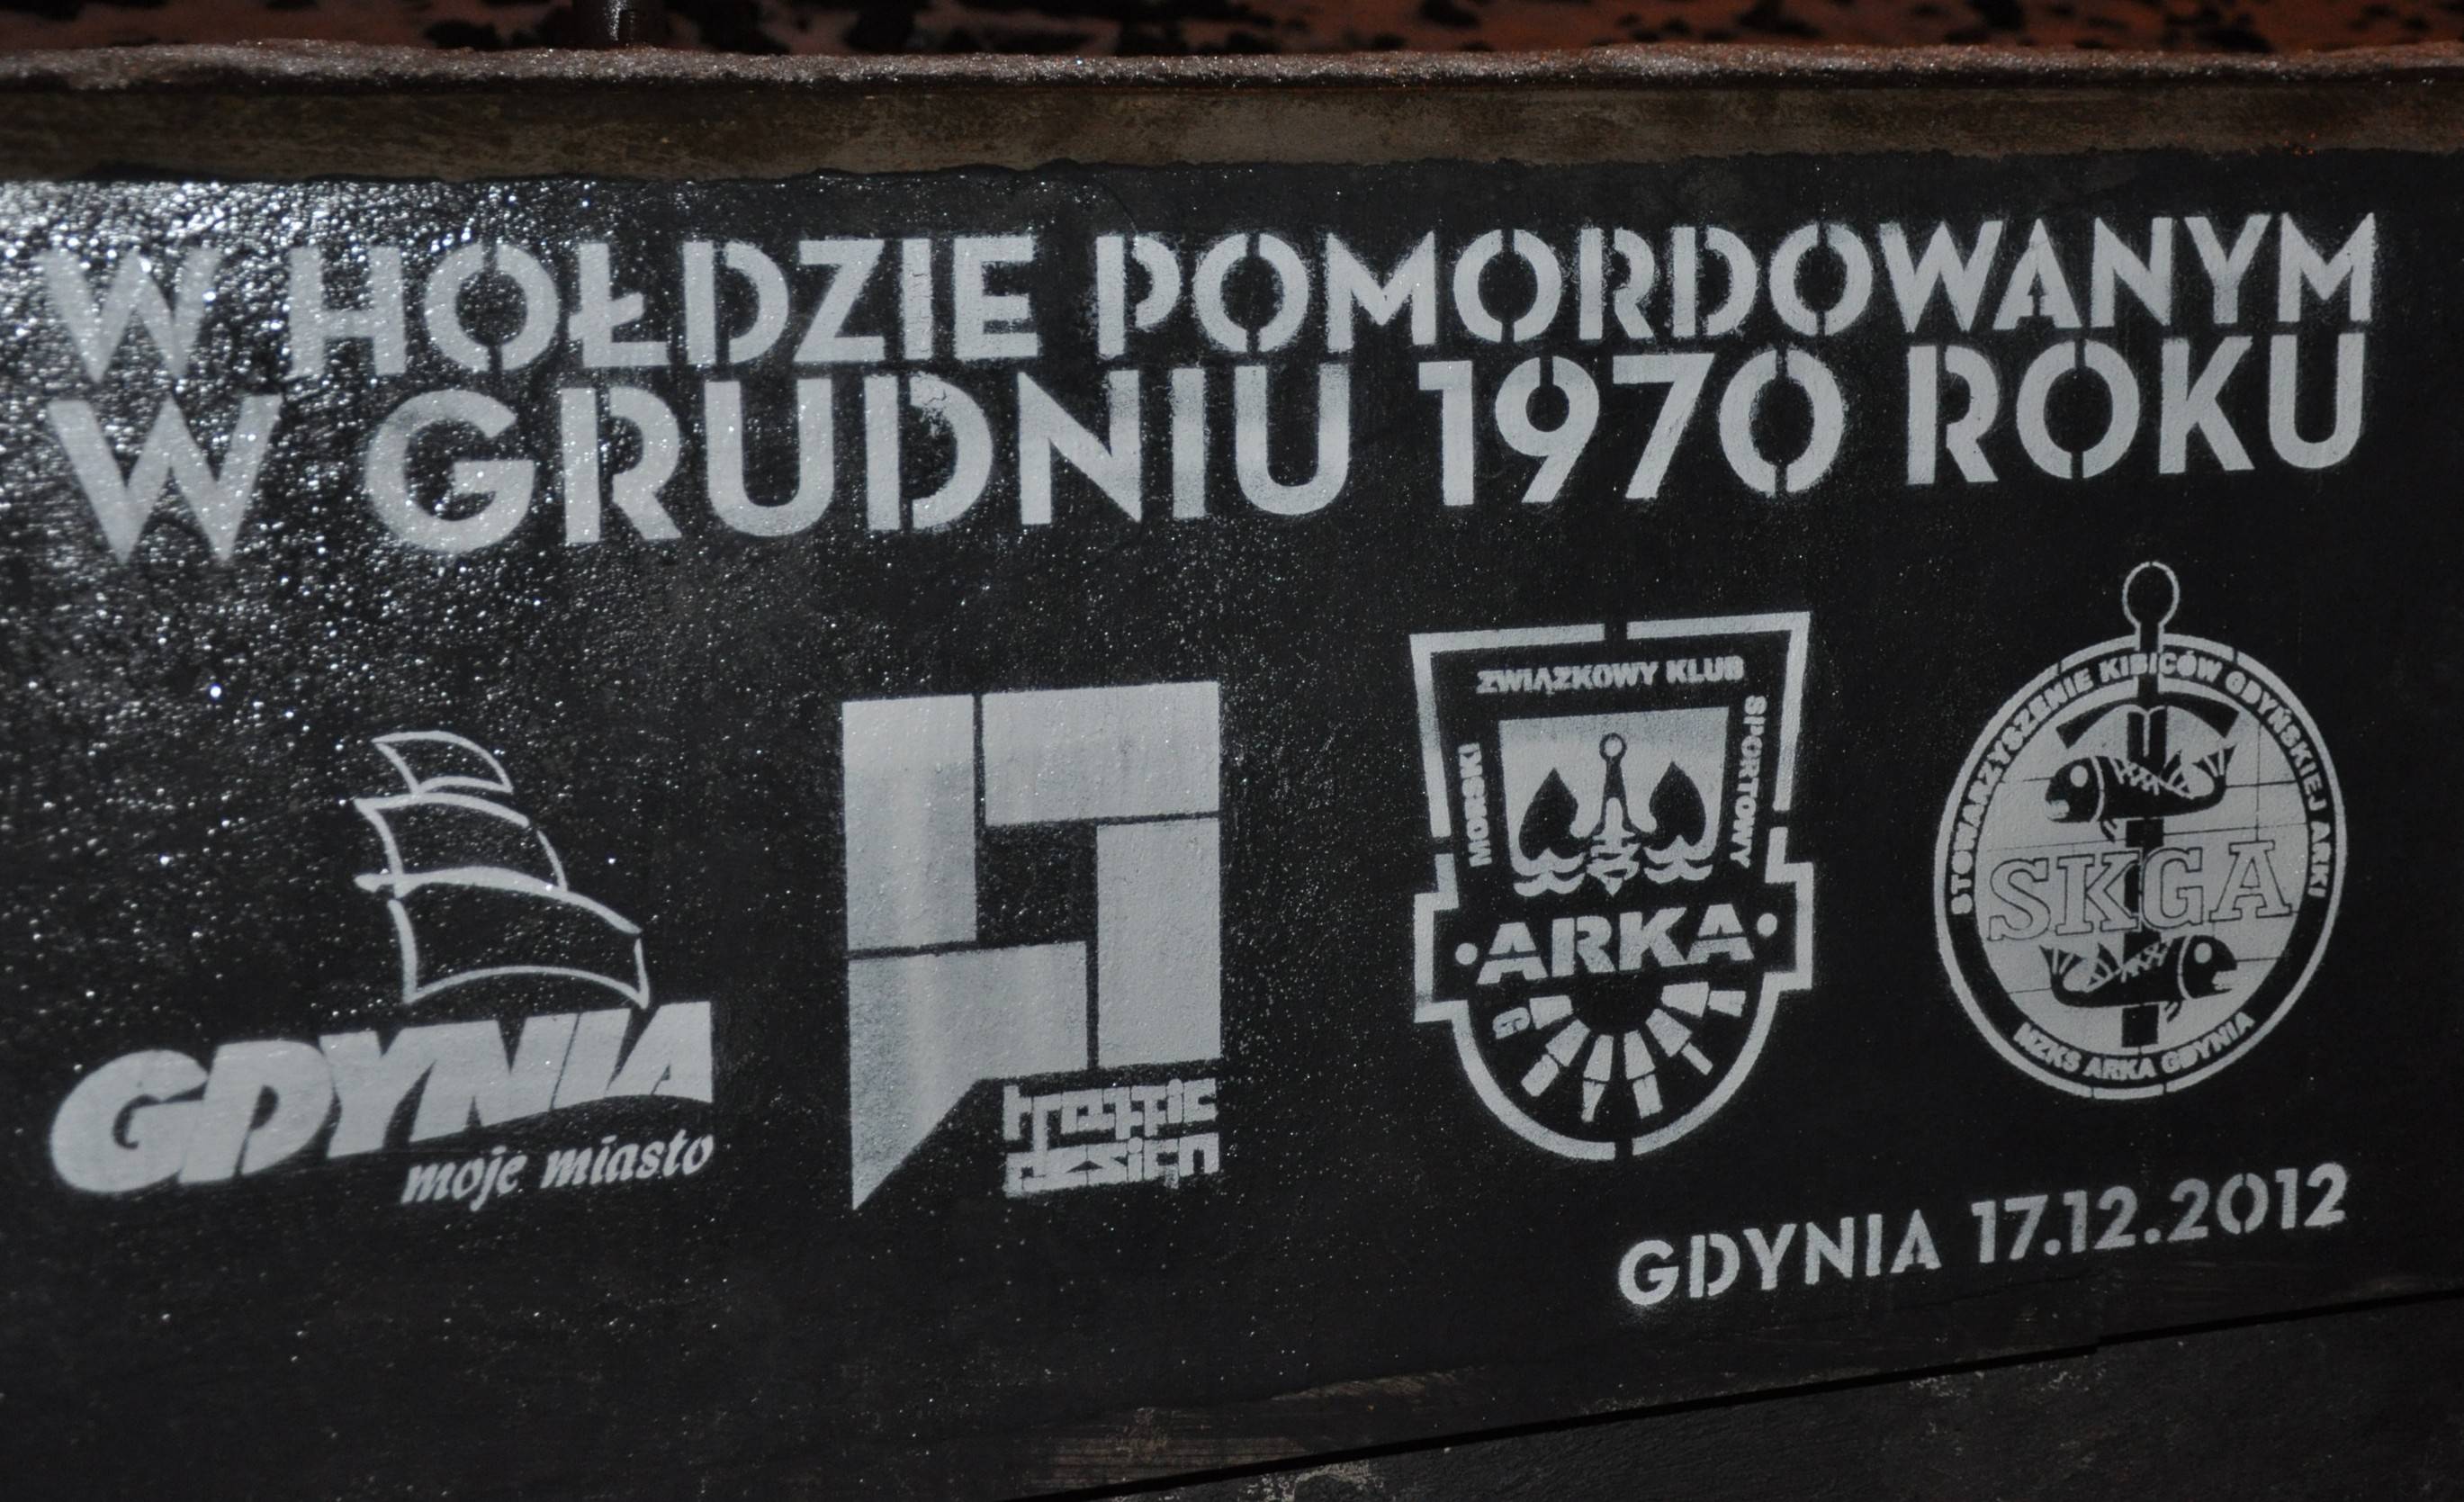 W hołdzie pomordowanym w grudniu 1970, za: arkowcy.pl